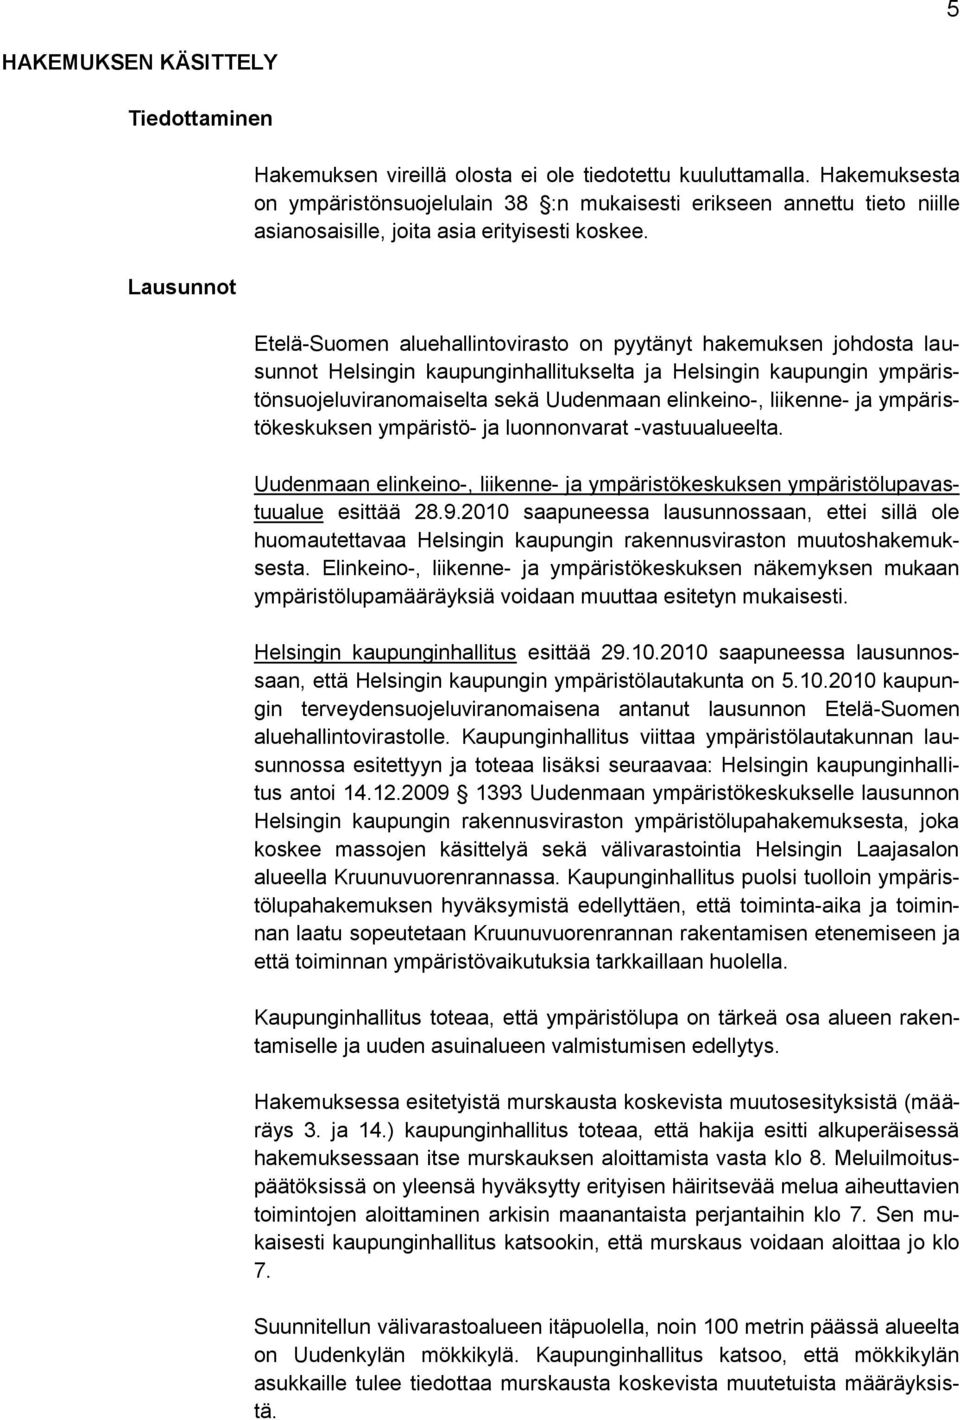 Etelä-Suomen aluehallintovirasto on pyytänyt hakemuksen johdosta lausunnot Helsingin kaupunginhallitukselta ja Helsingin kaupungin ympäristönsuojeluviranomaiselta sekä Uudenmaan elinkeino-, liikenne-